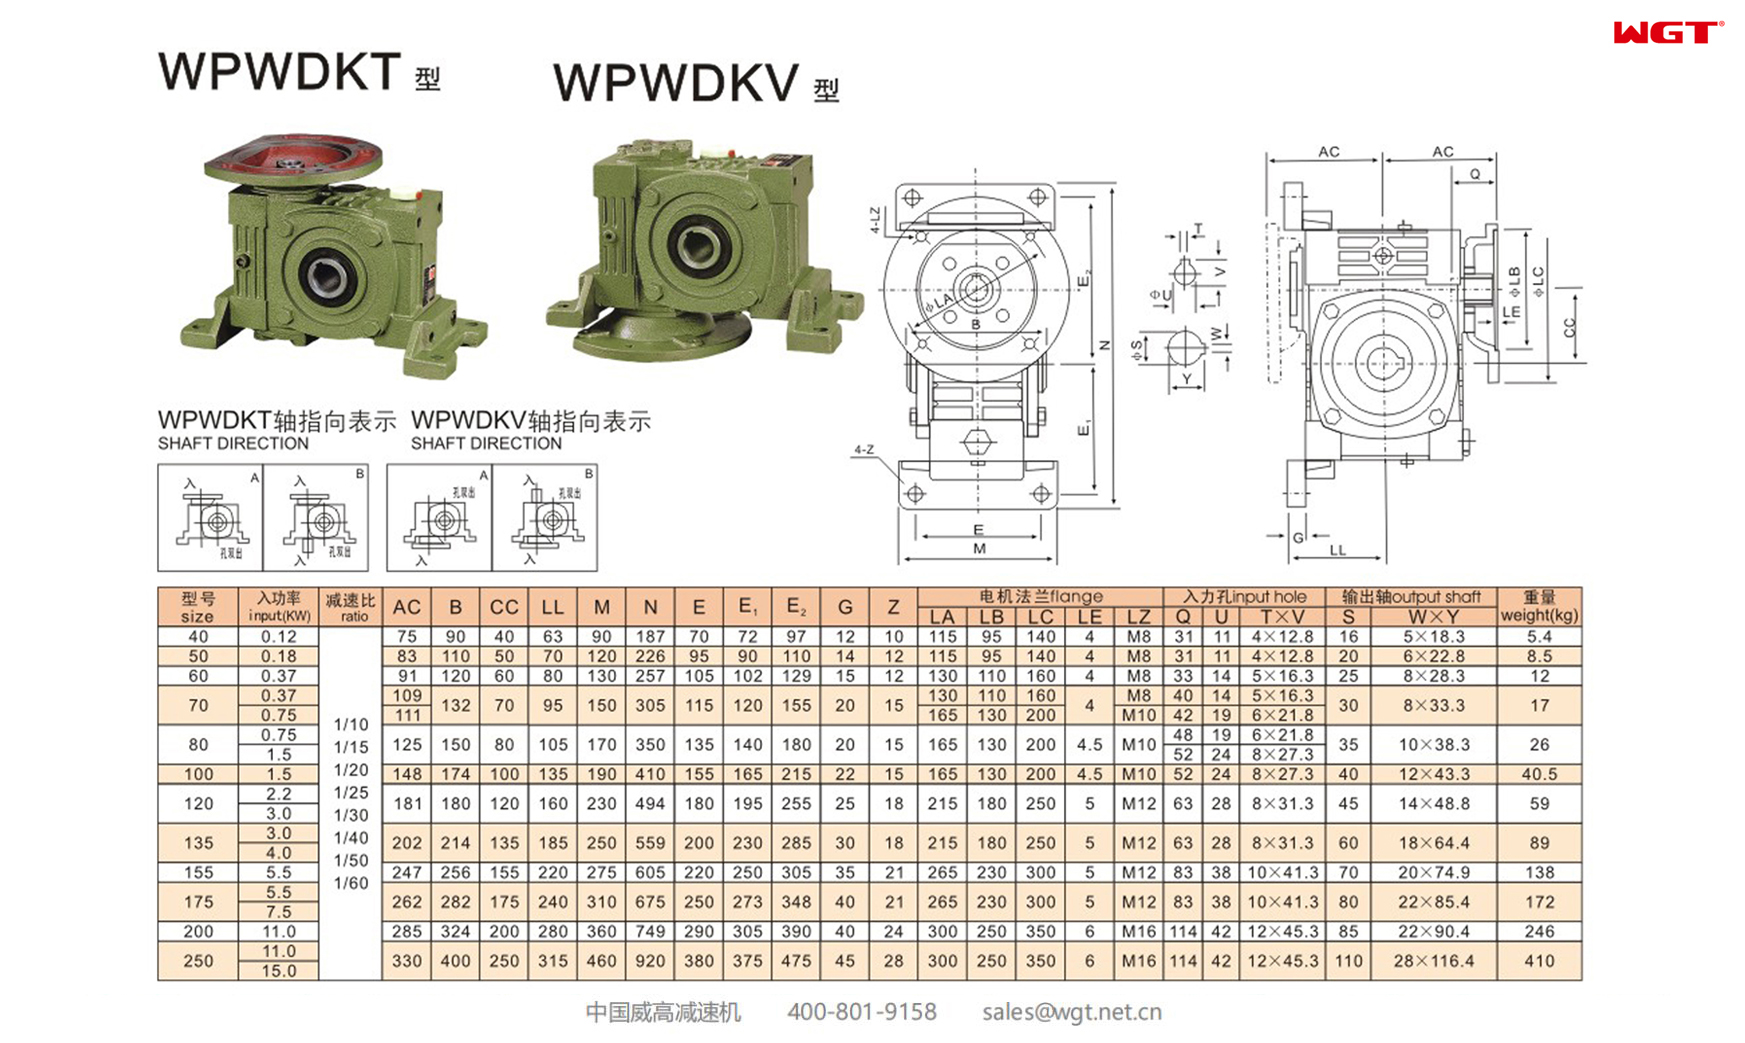 WPWDKT WPWDKV100 Worm Gear Reducer Universal Reducer